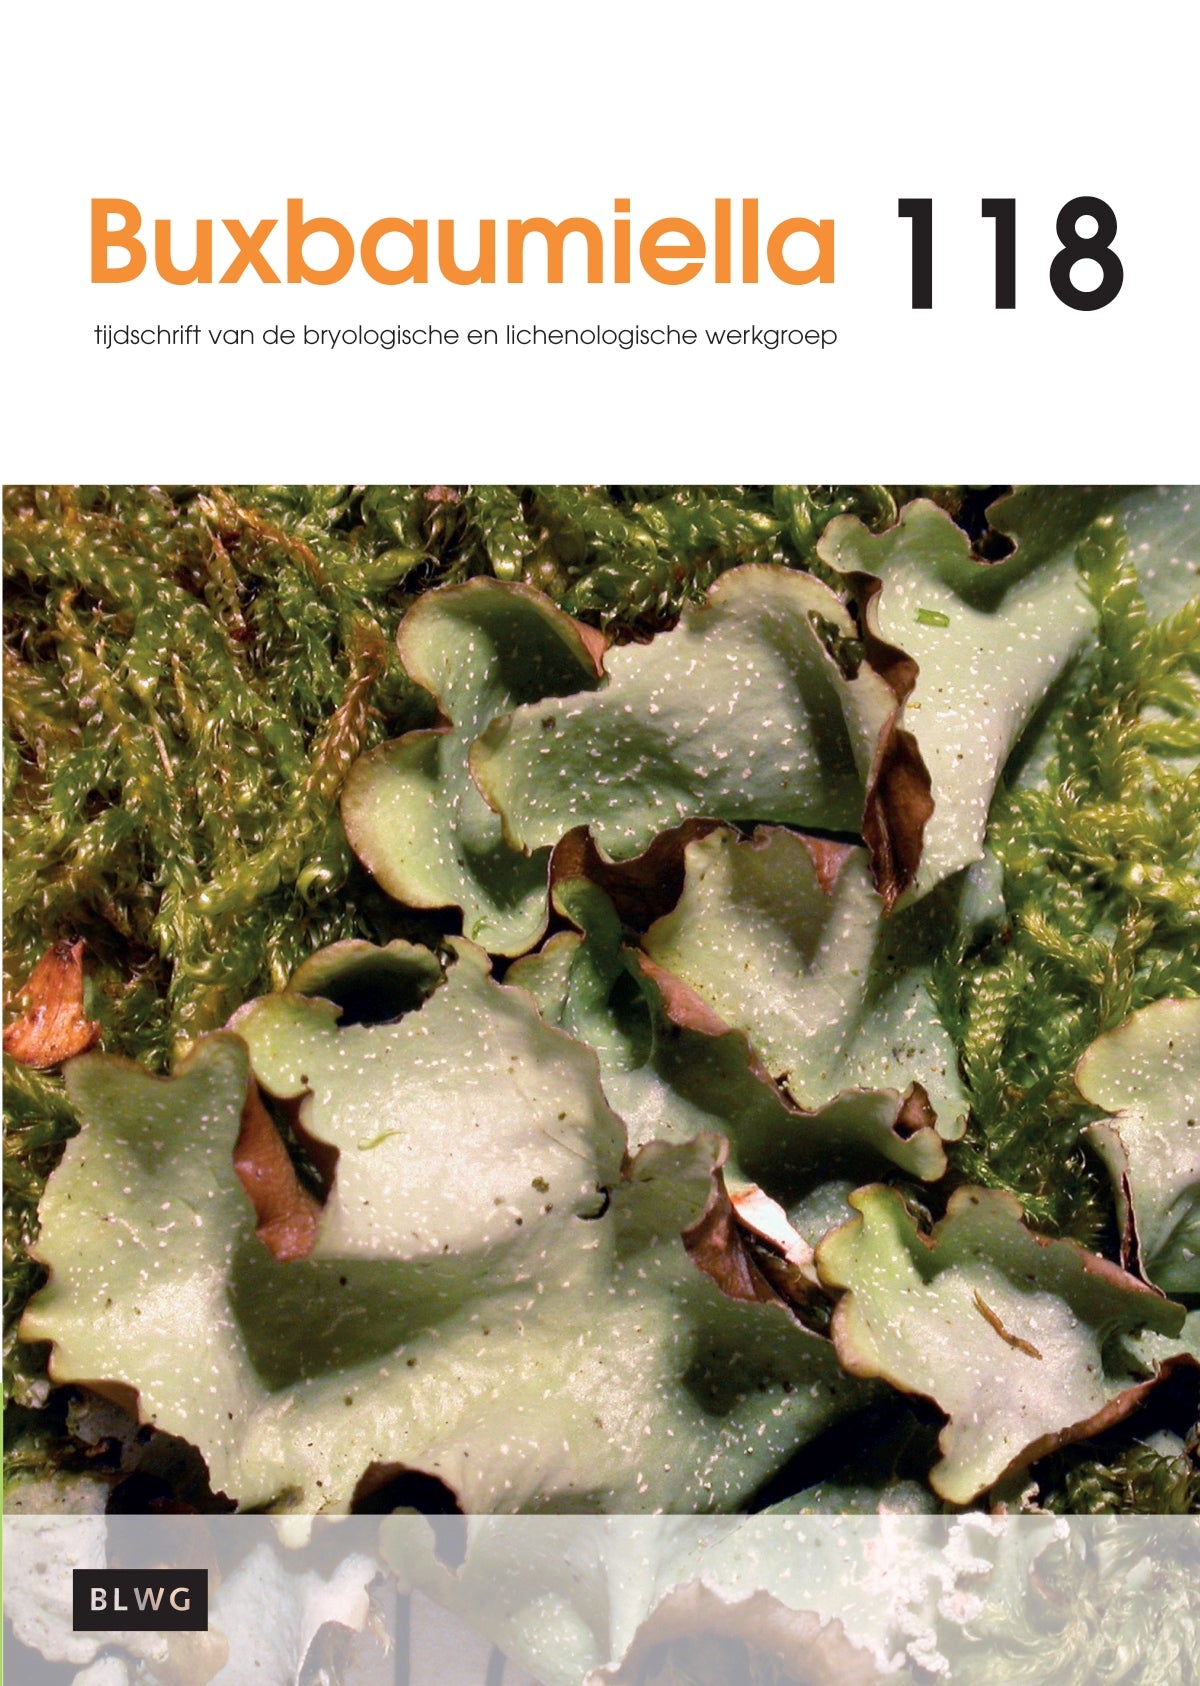 Buxbaumiella (los nummer)